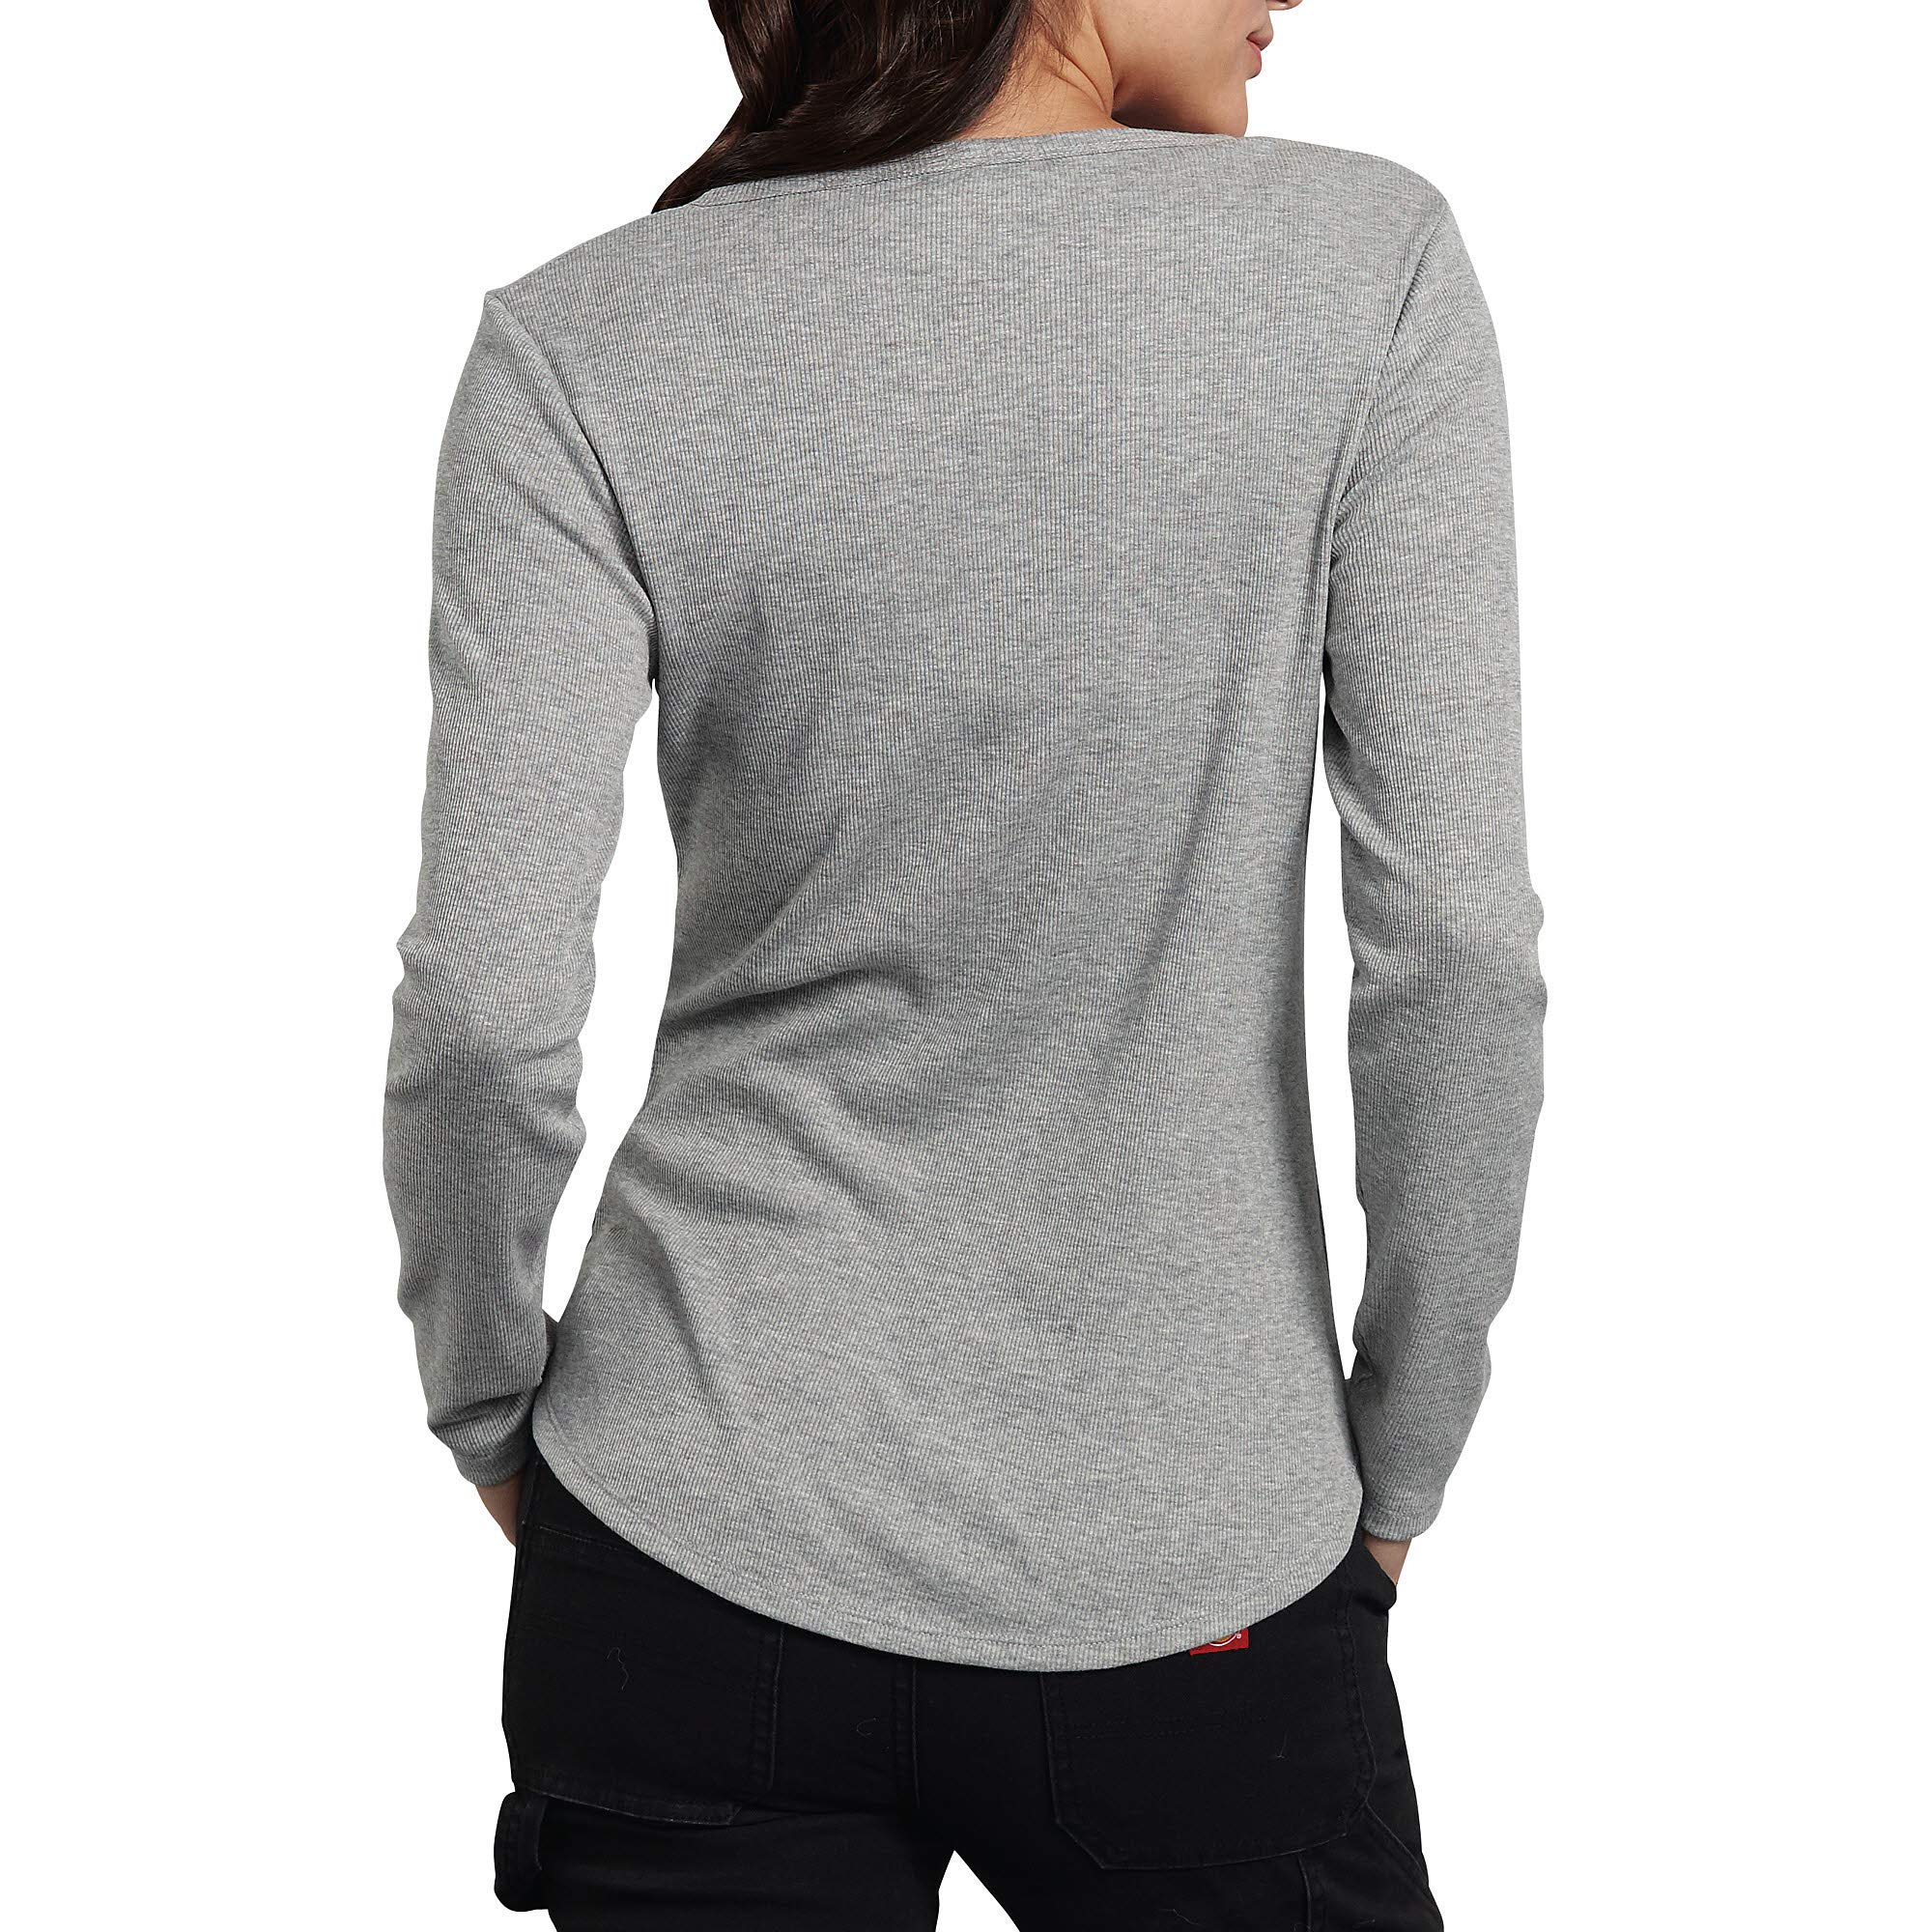 Dickies Women's Long-Sleeve 3-Button Henley Shirt